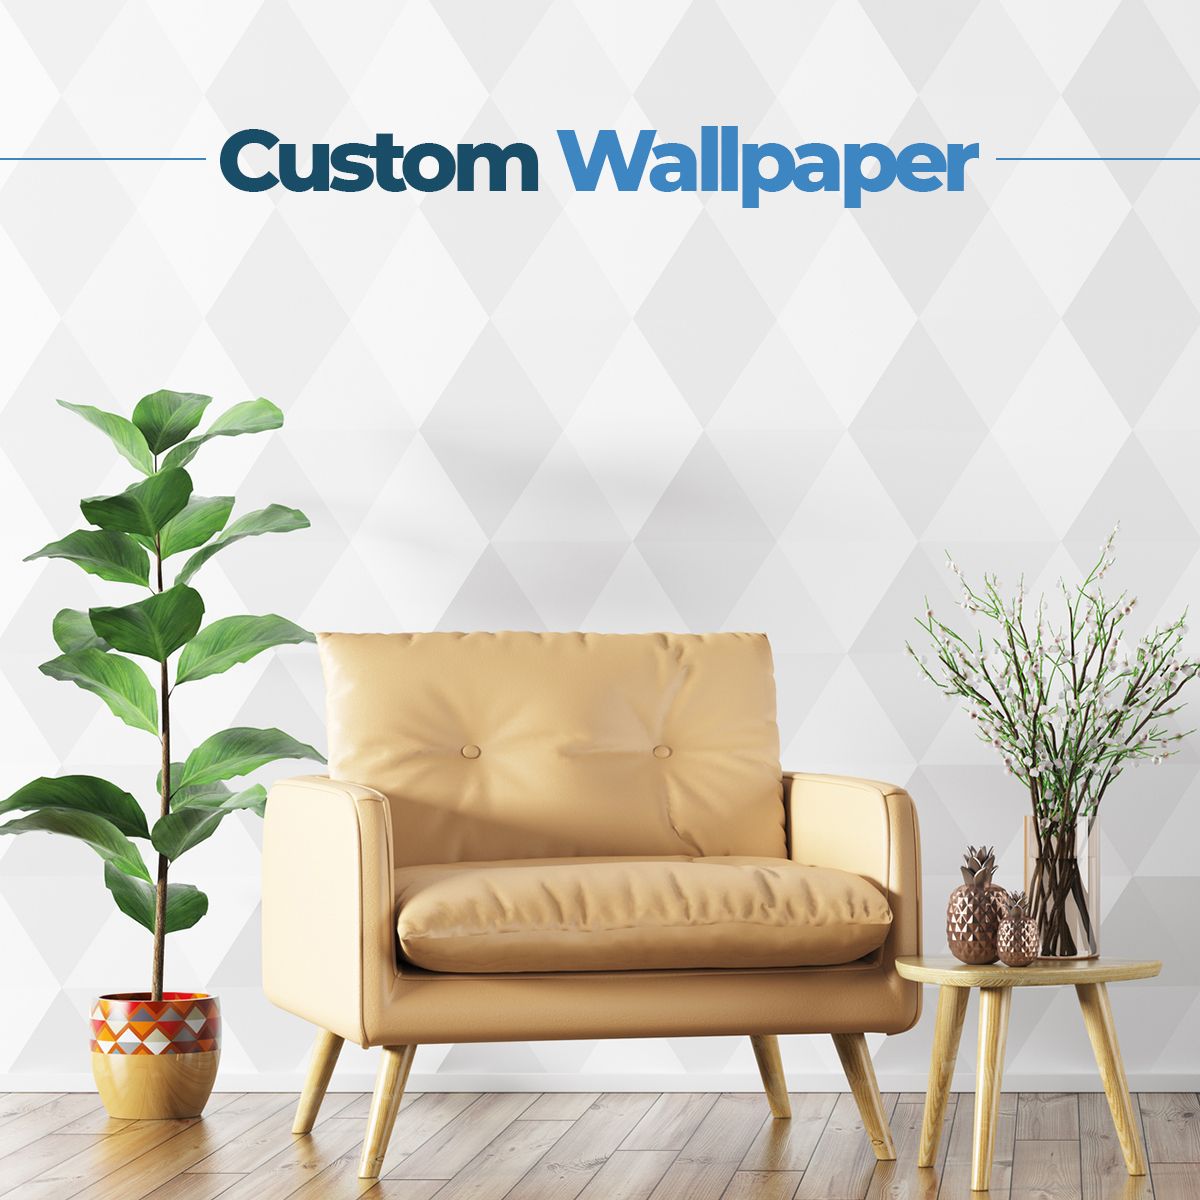 Custom Wallpaper